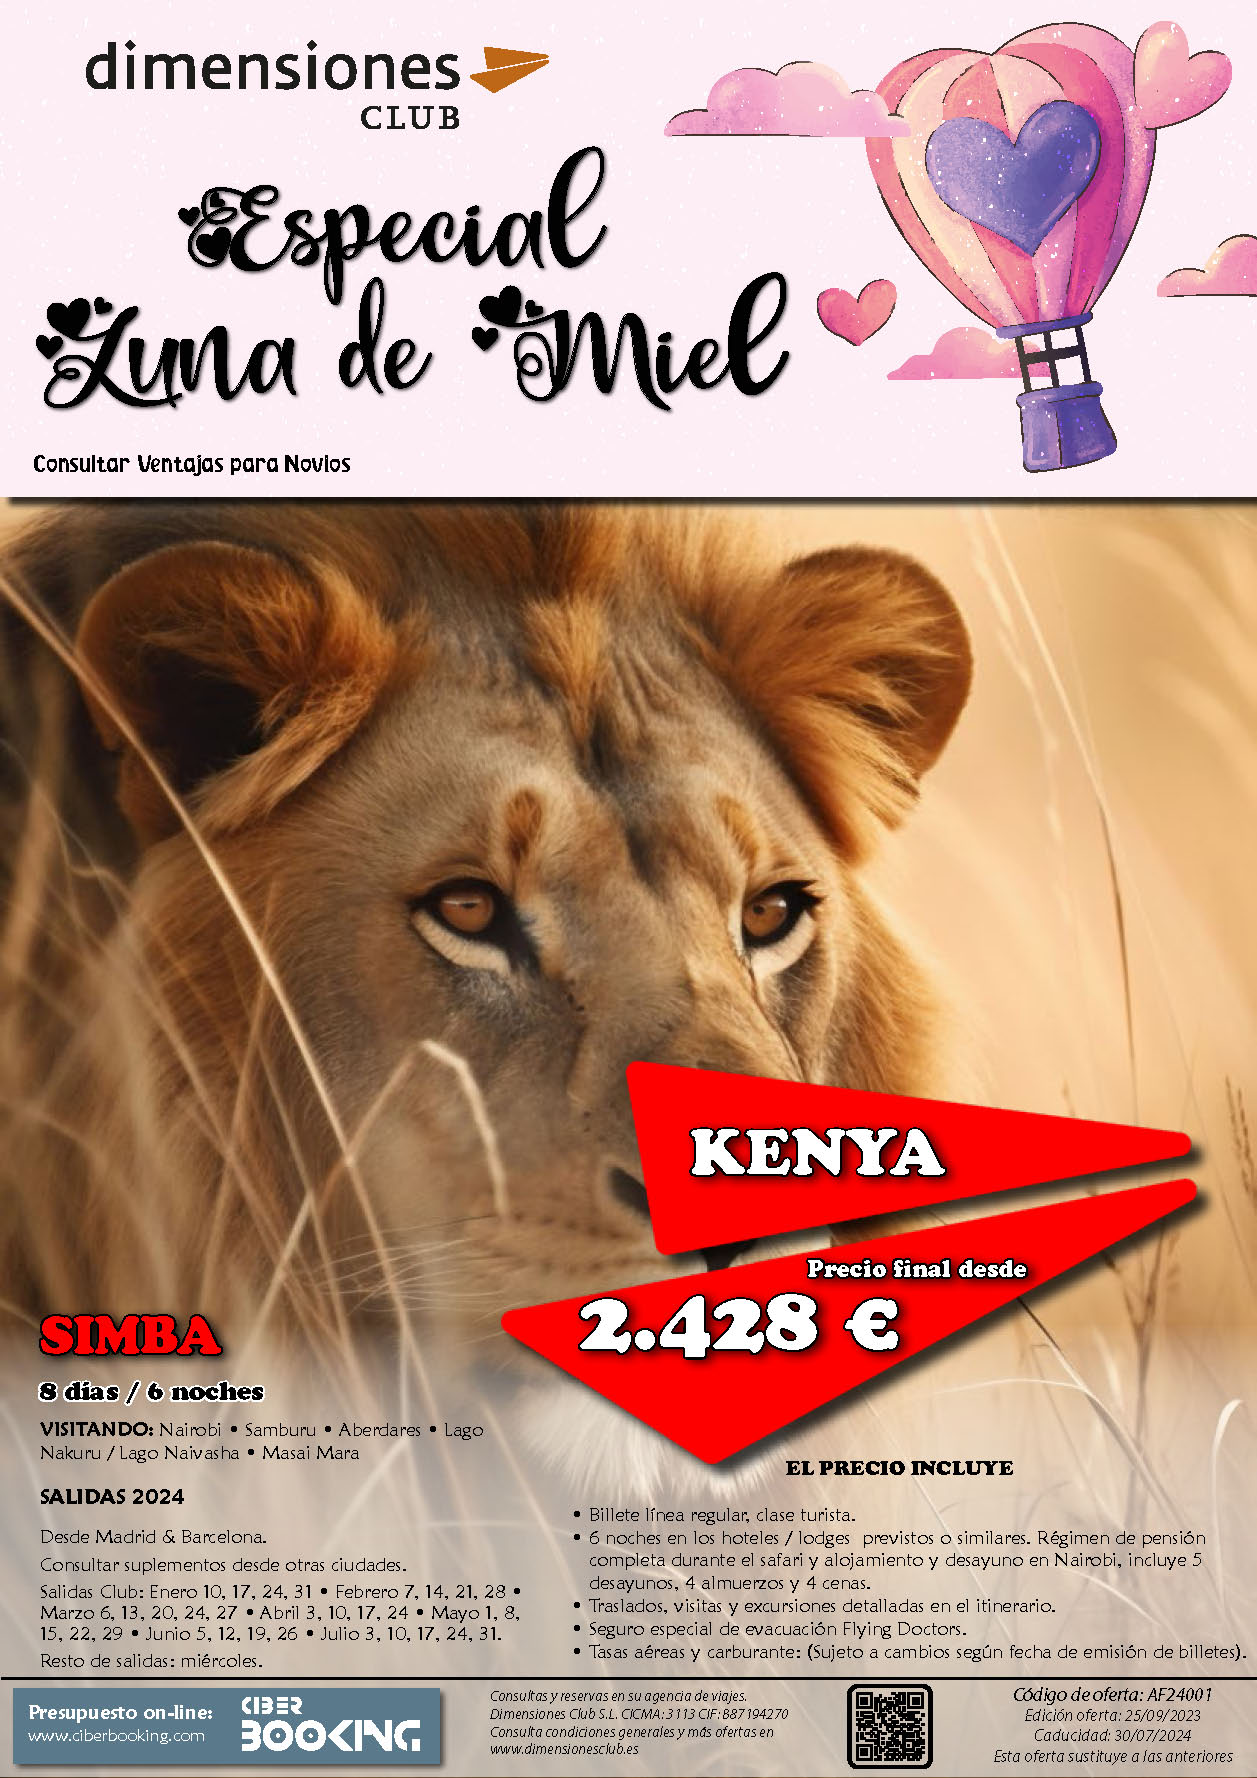 Oferta Dimensiones Club 2024 Luna de Miel en Kenia Safari Simba 8 dias salidas desde Madrid y Barcelona